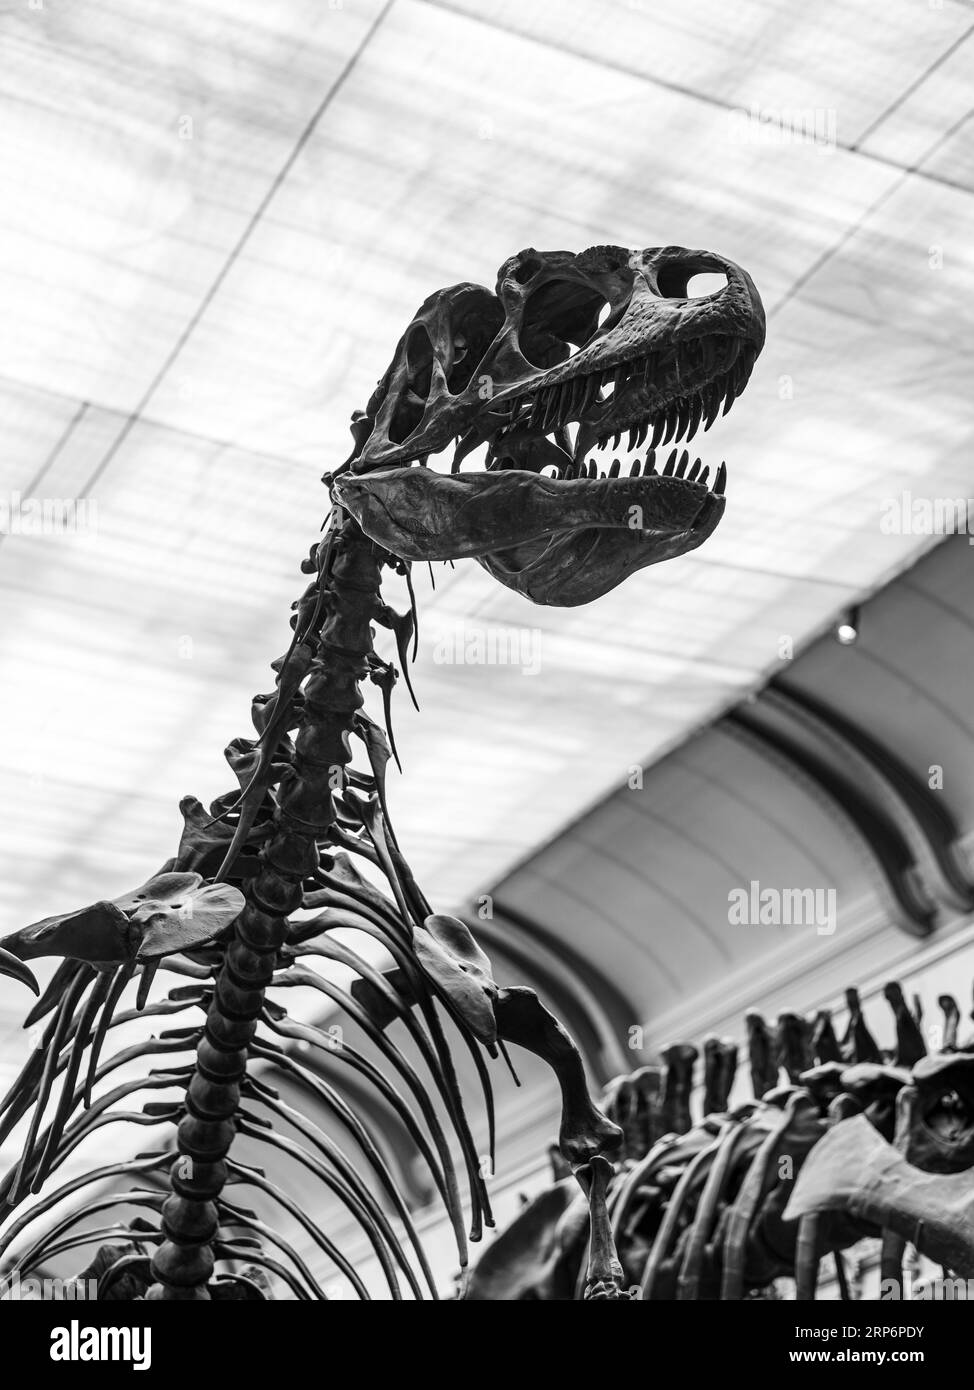 Squelette effrayant de dinosaure moulé d'un Allosaurus fragilis exposé dans la Galerie de paléontologie et d'anatomie comparée Banque D'Images